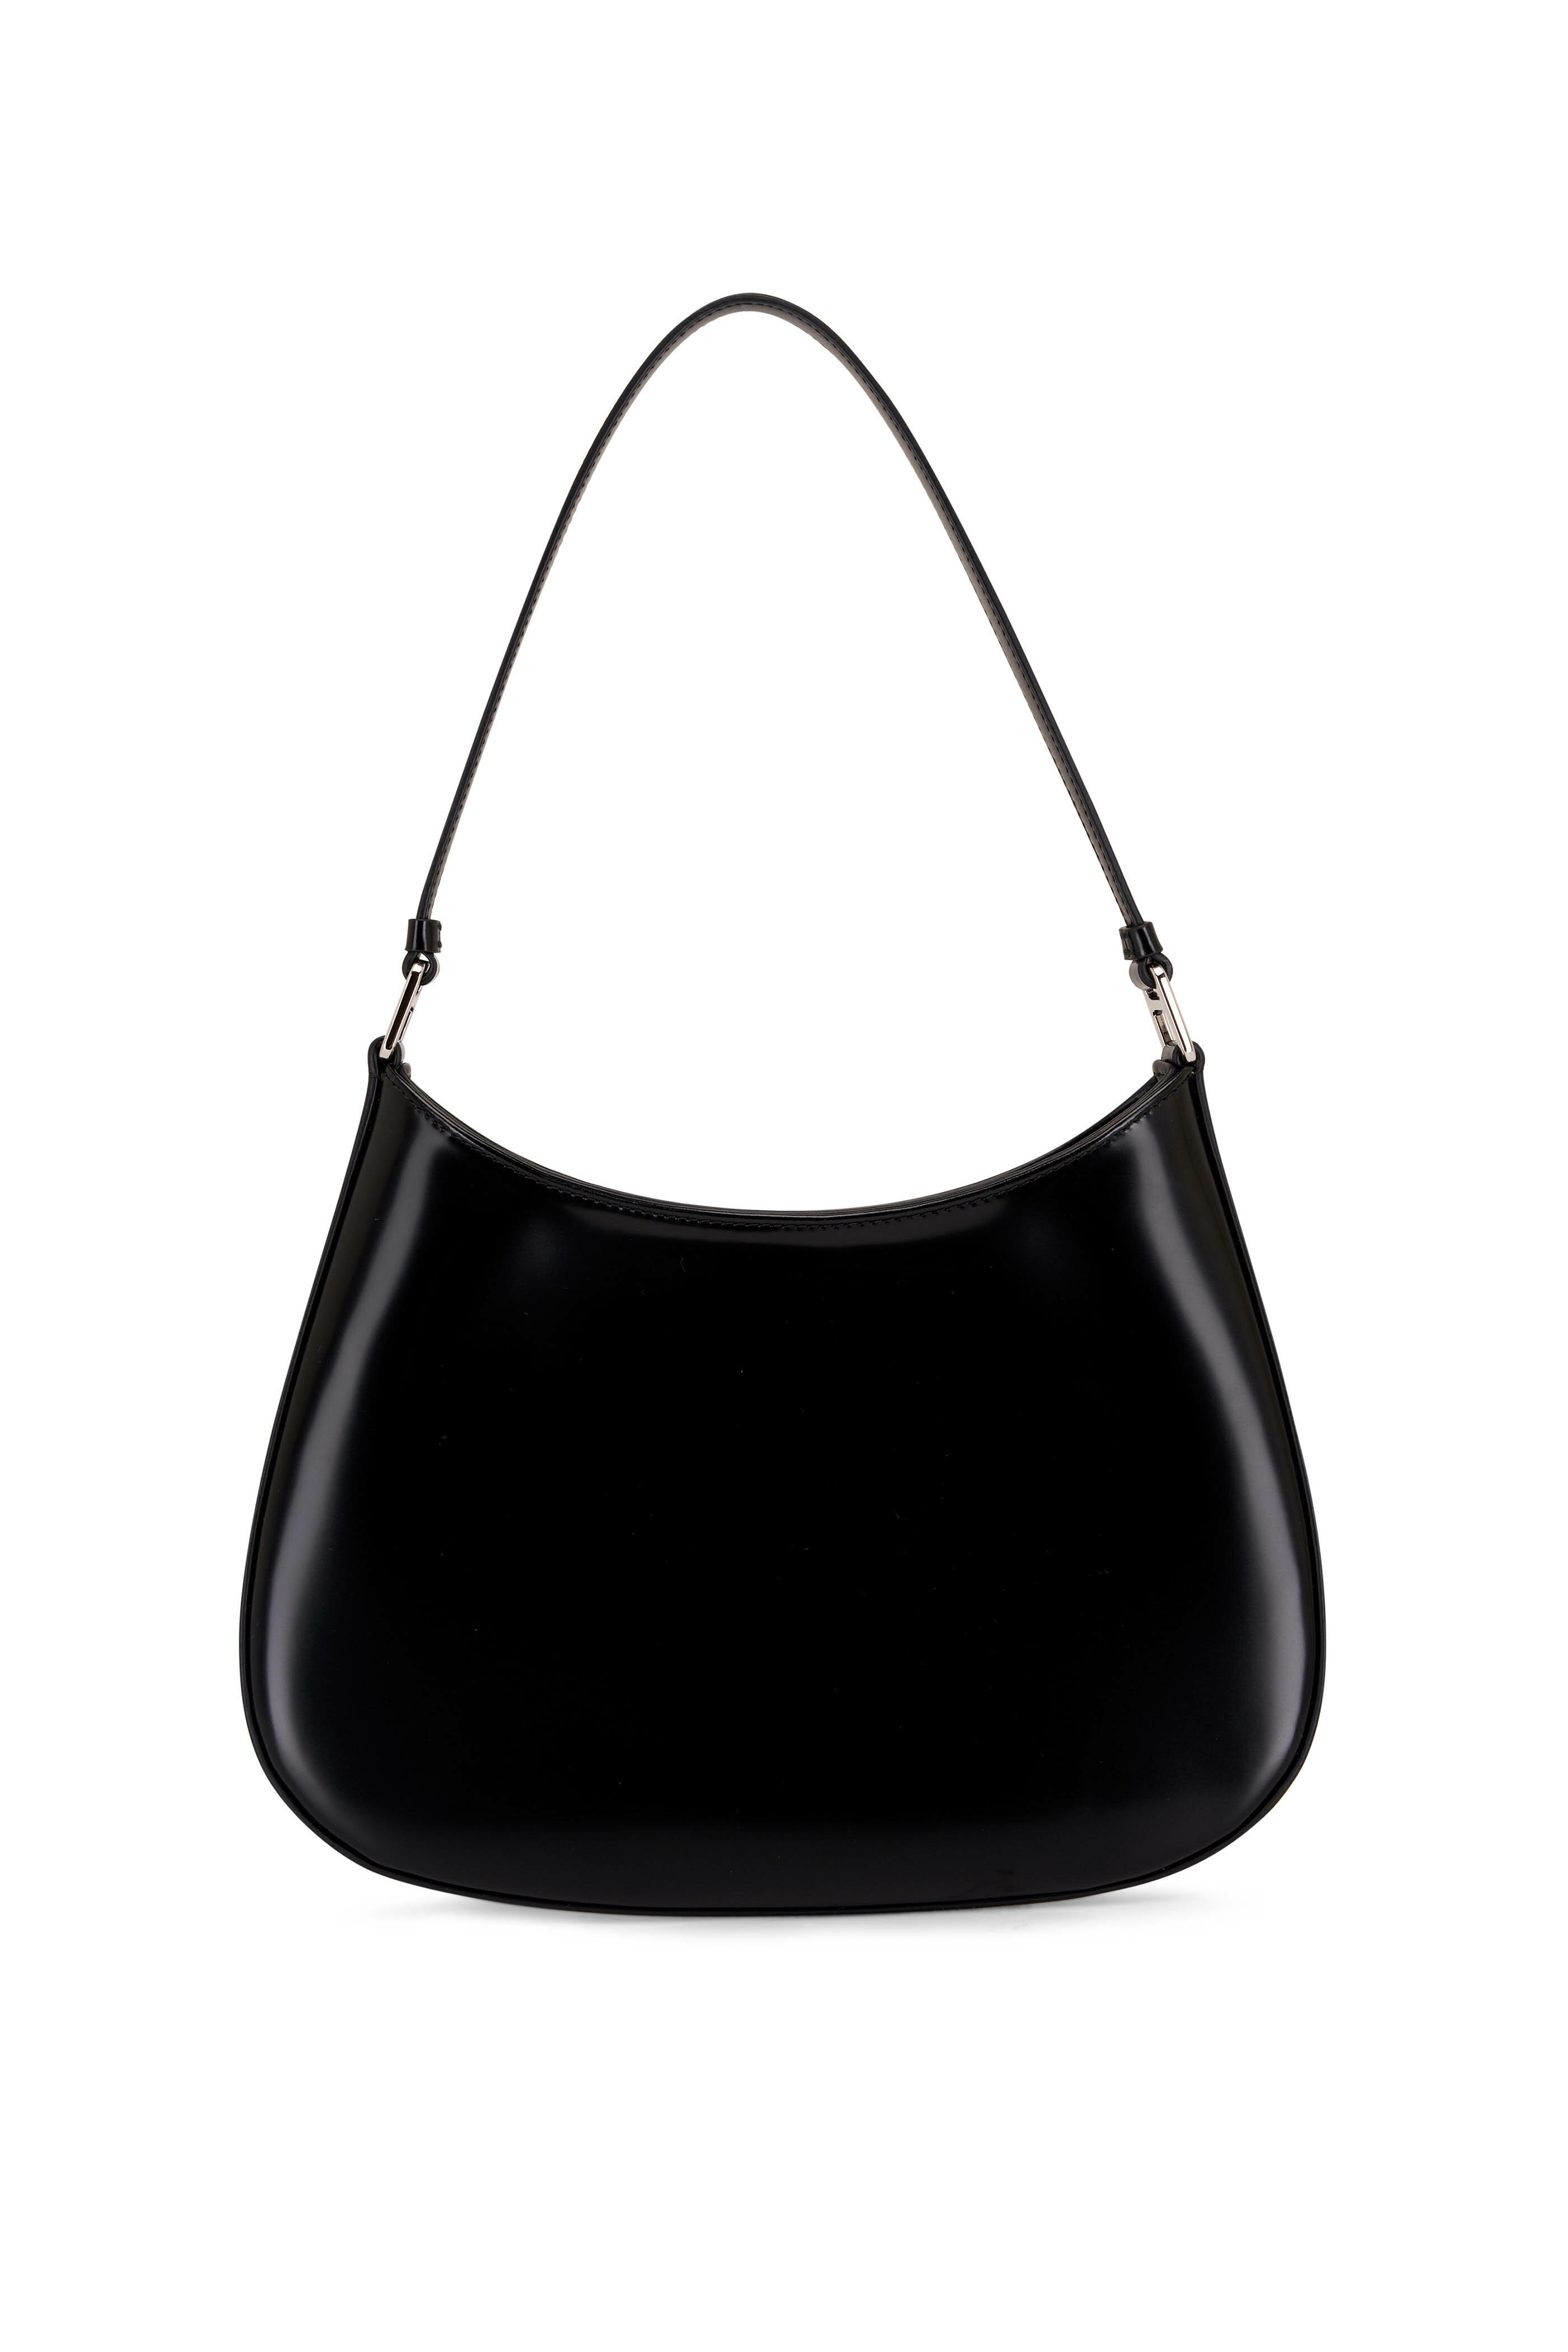 Prada - Cleo Black Brushed Leather Hobo Shoulder Bag